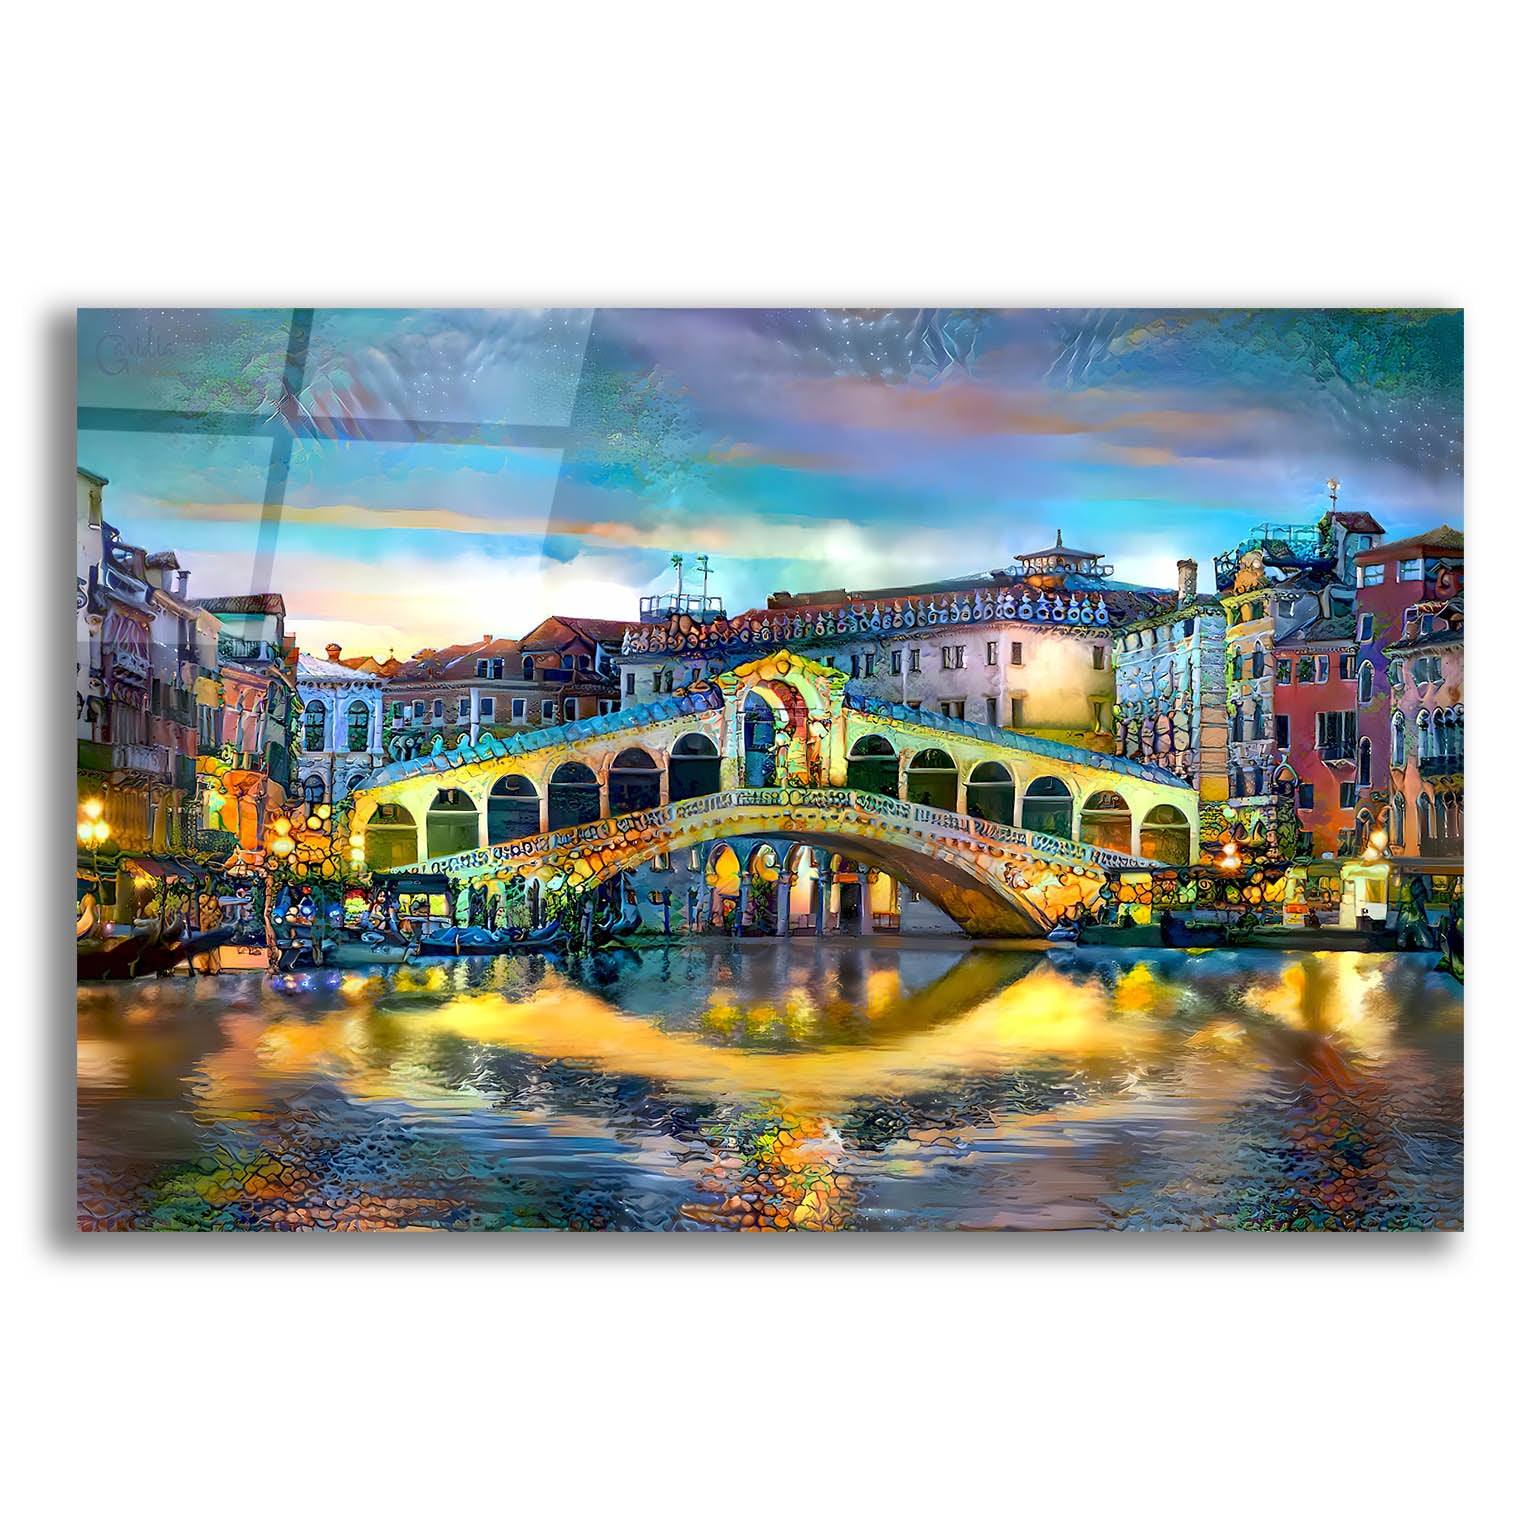 Epic Art 'Venice Italy Rialto Bridge at night' by Pedro Gavidia, Acrylic Glass Wall Art,16x12